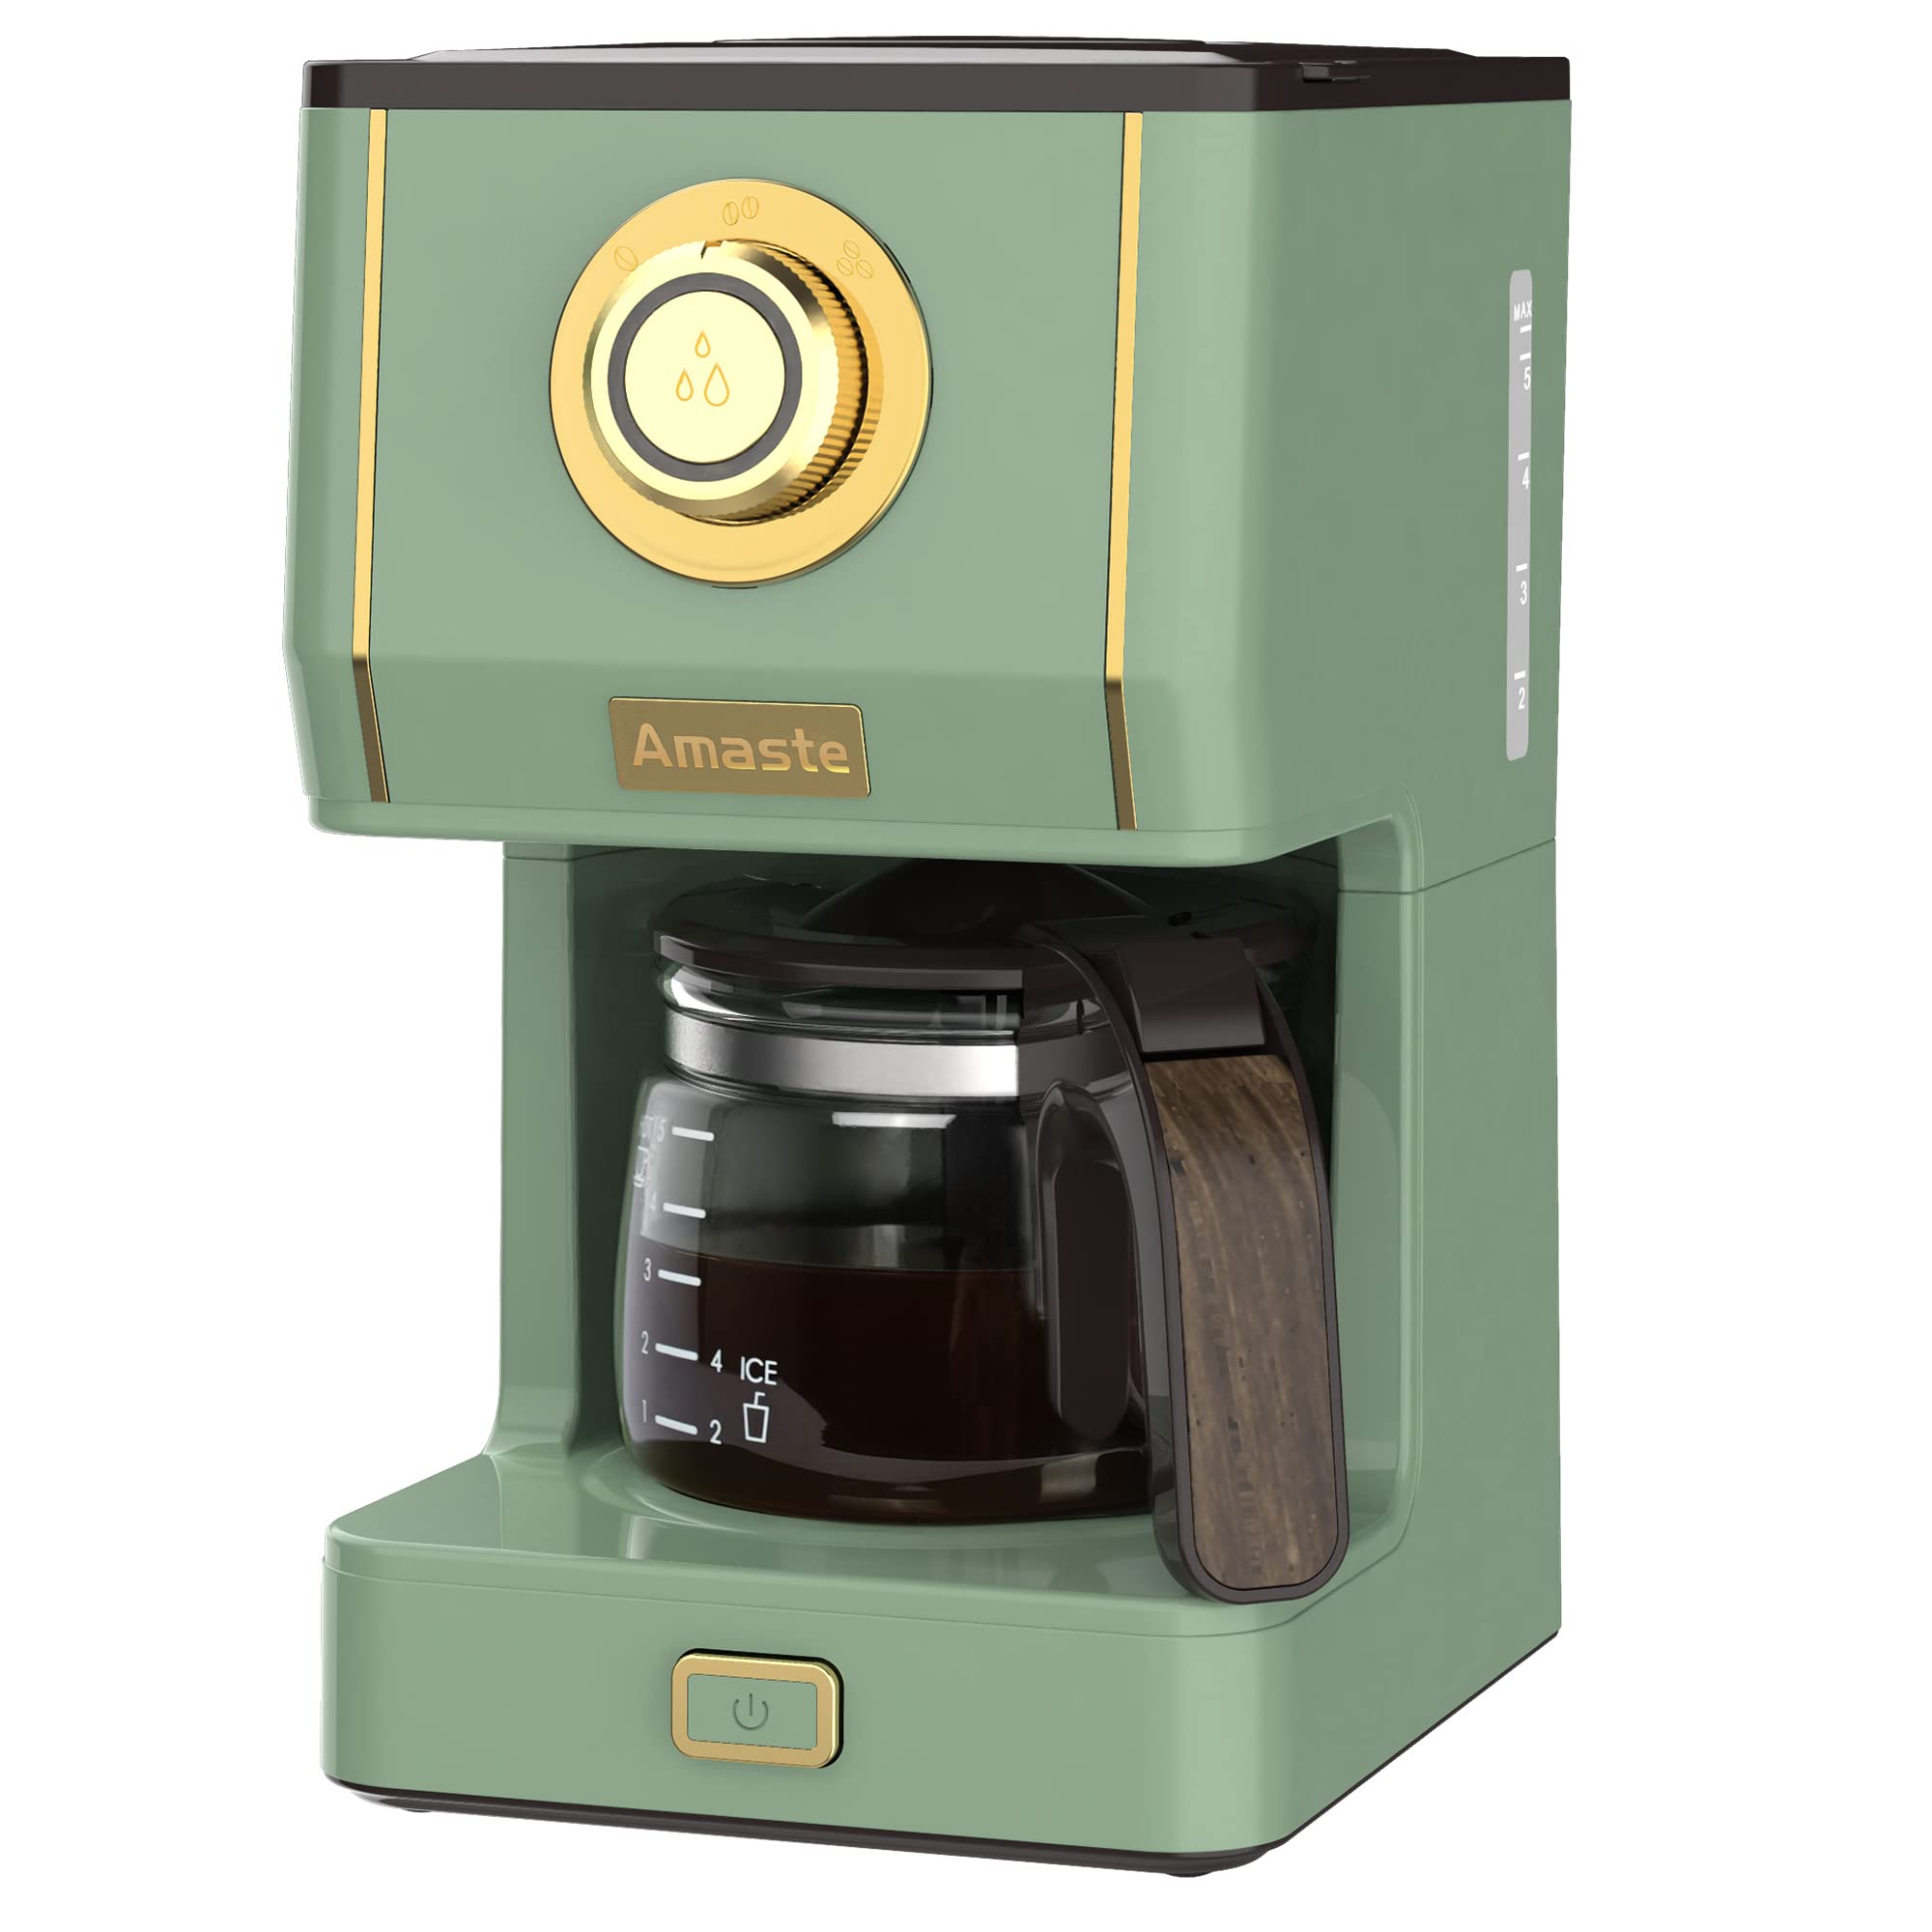 Amaste Drip Coffee Machine